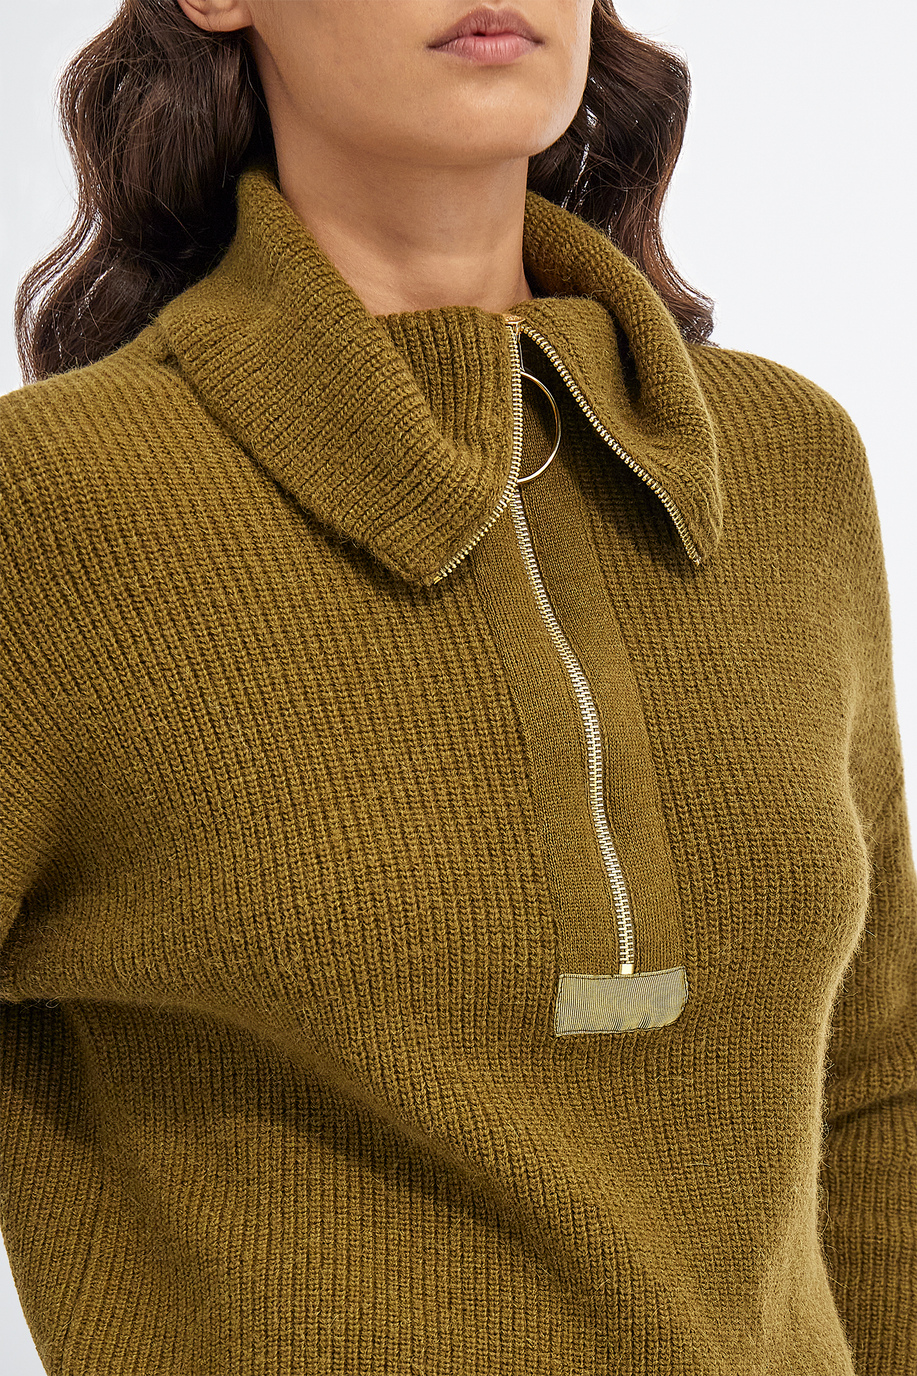 Maglia tricot donna collo alto in alpaca regular fit con zip - Maglie | La Martina - Official Online Shop